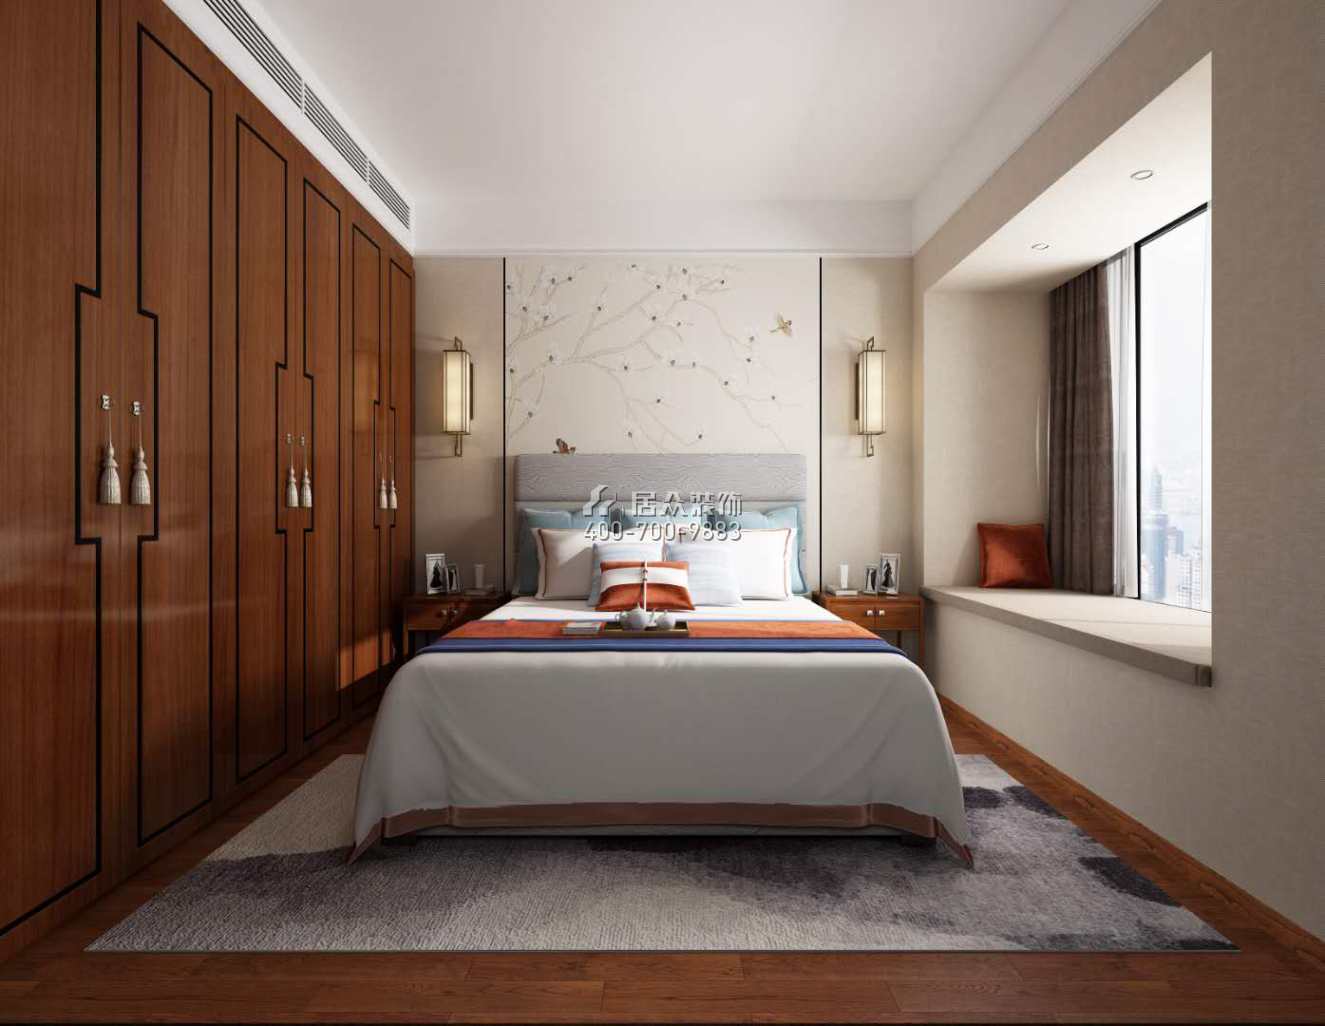 华发峰景湾168平方米中式风格平层户型卧室装修效果图